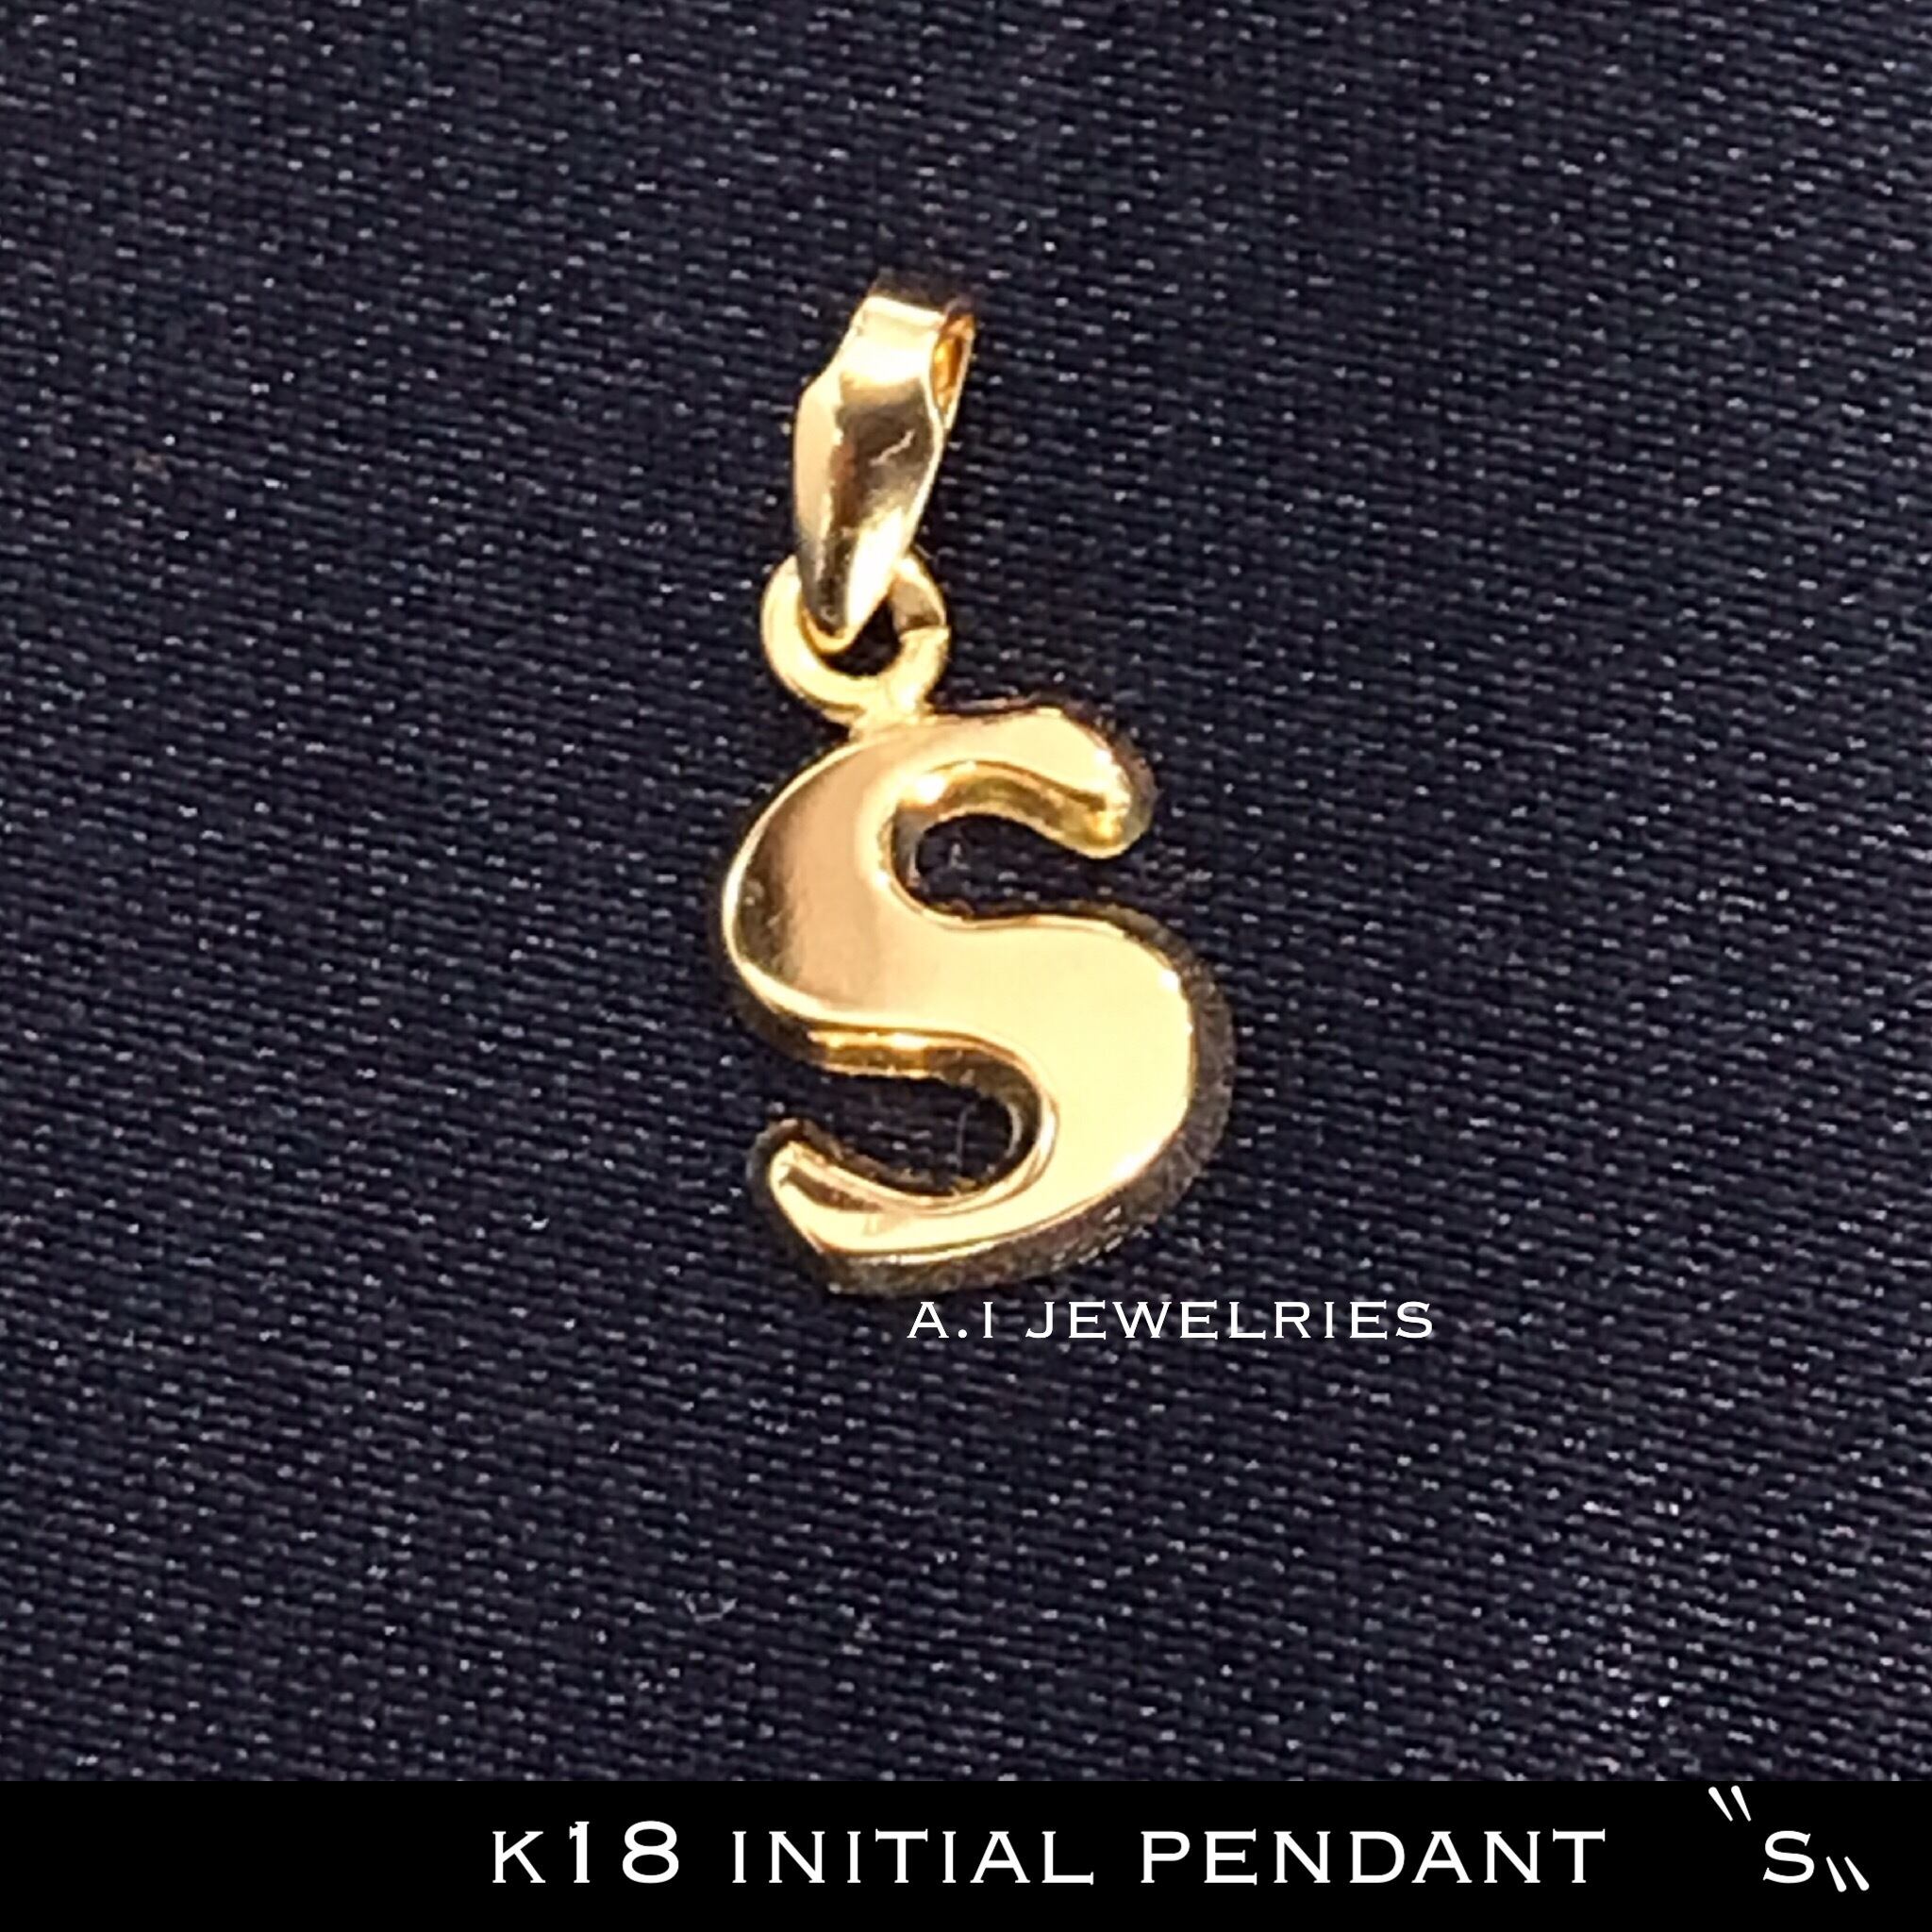 K18 18金 アルファベット イニシャル ペンダント S文字 Sサイズ K18 Initial Pendant S A I Jewelries エイアイジュエリーズ